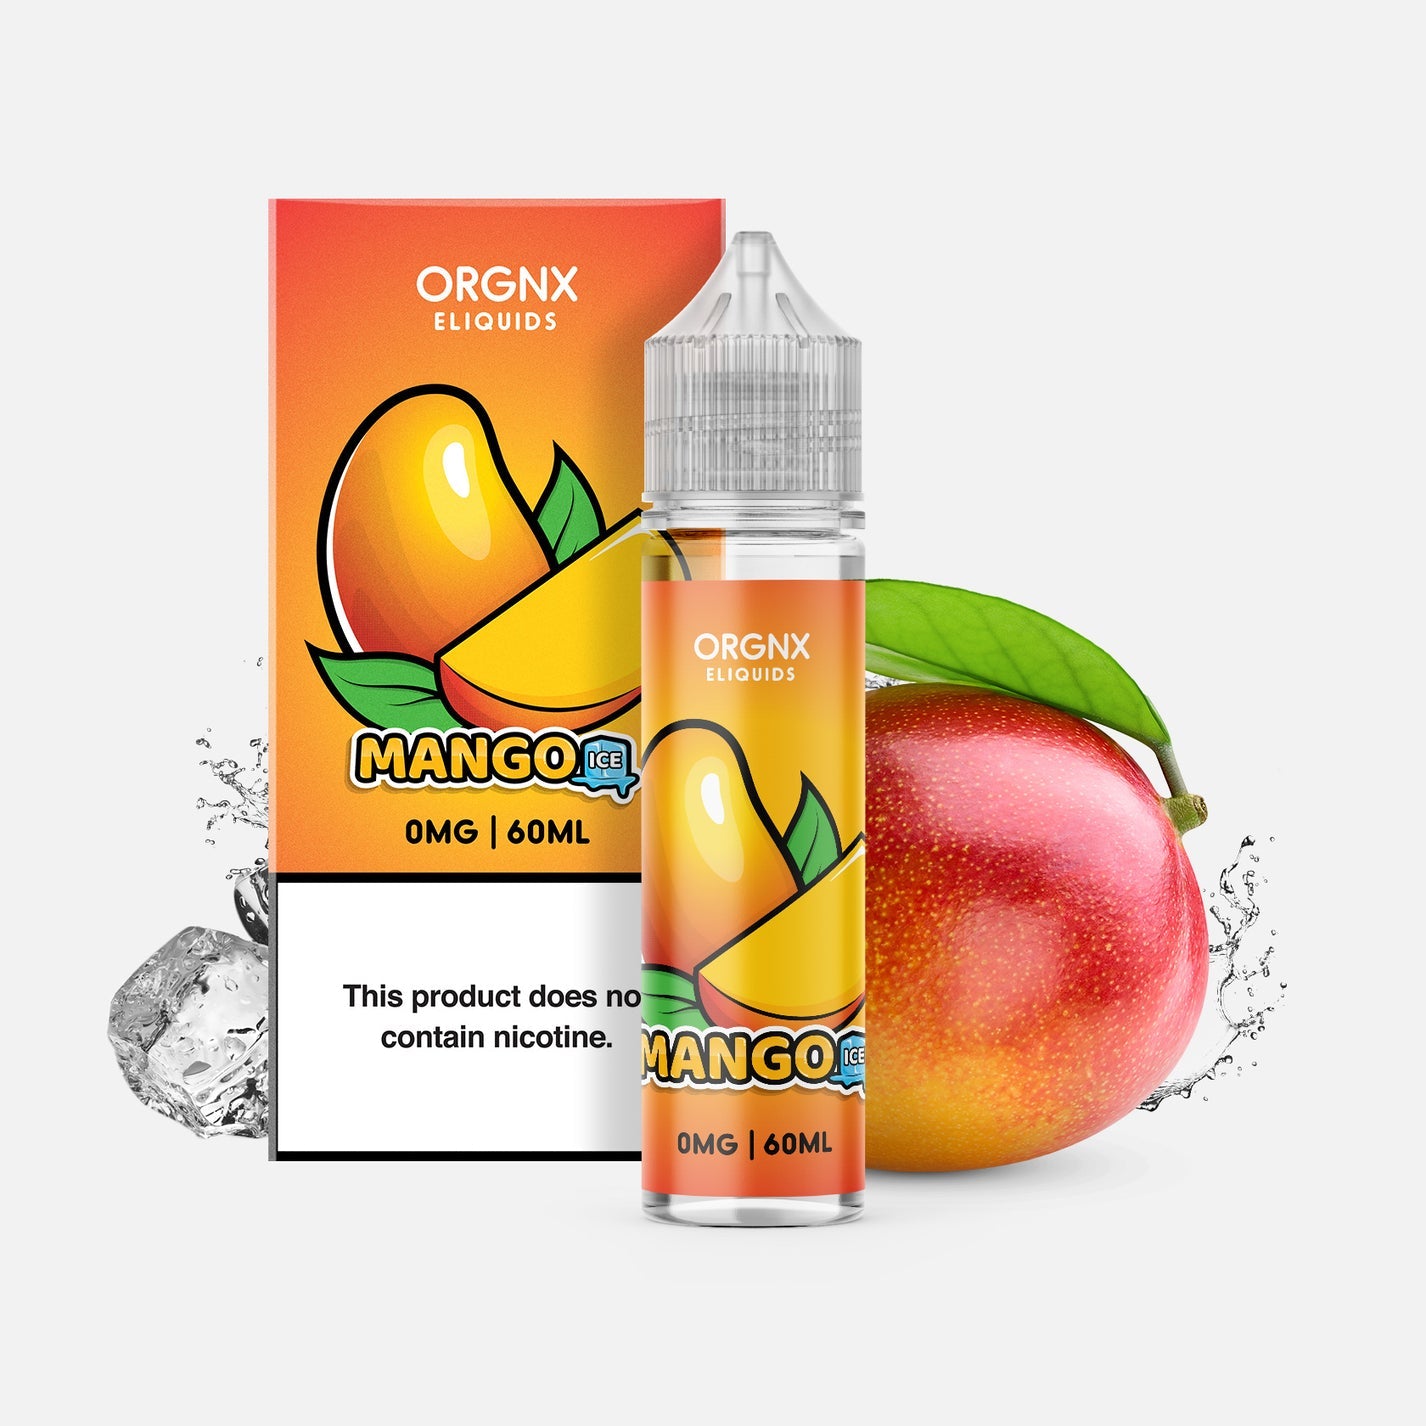 ORGNX: Mango Ice